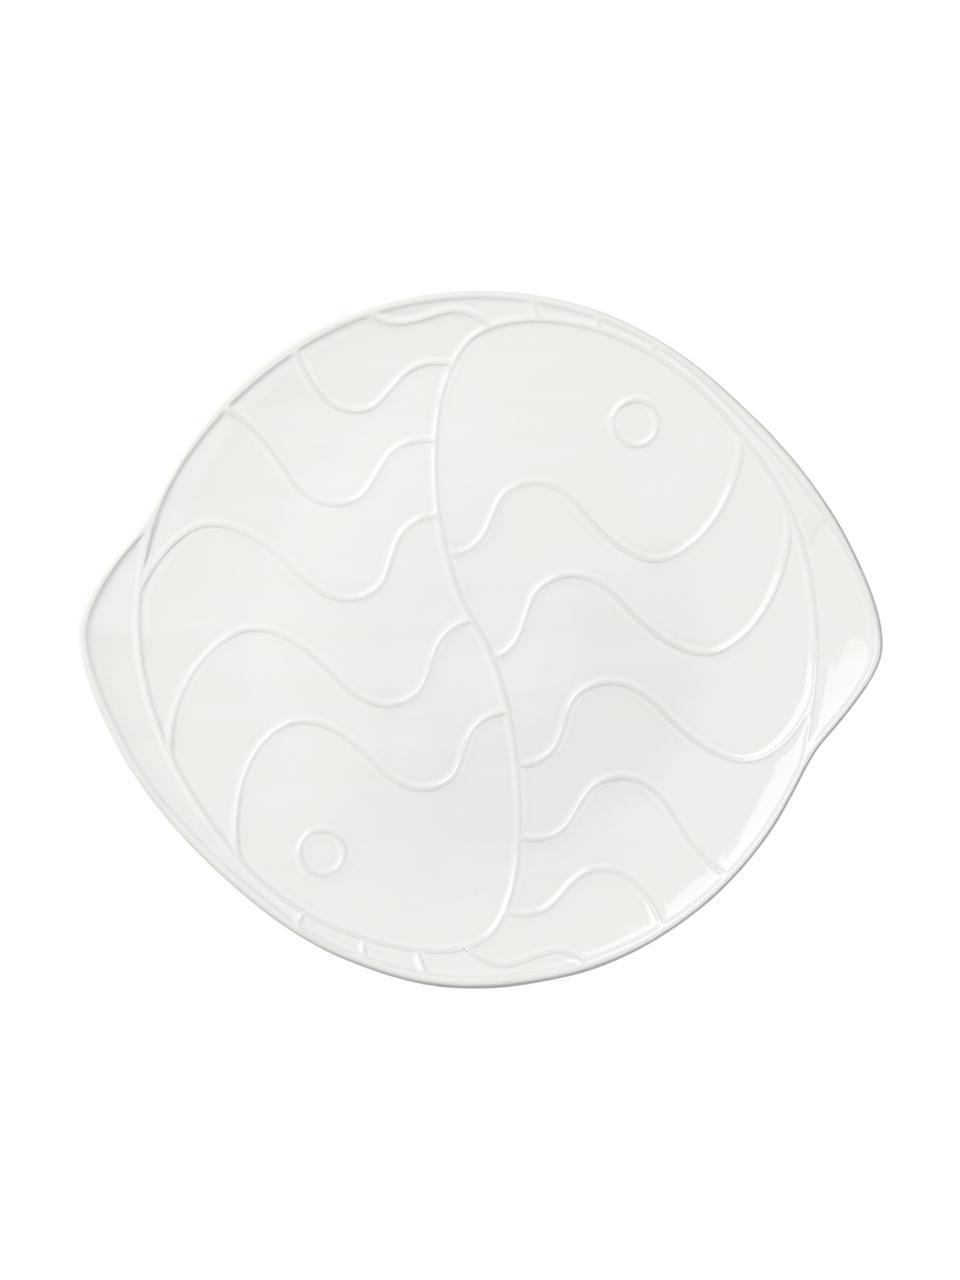 Piatto da portata Pesce, Gres, Bianco, Lung. 35 x Larg. 31 cm